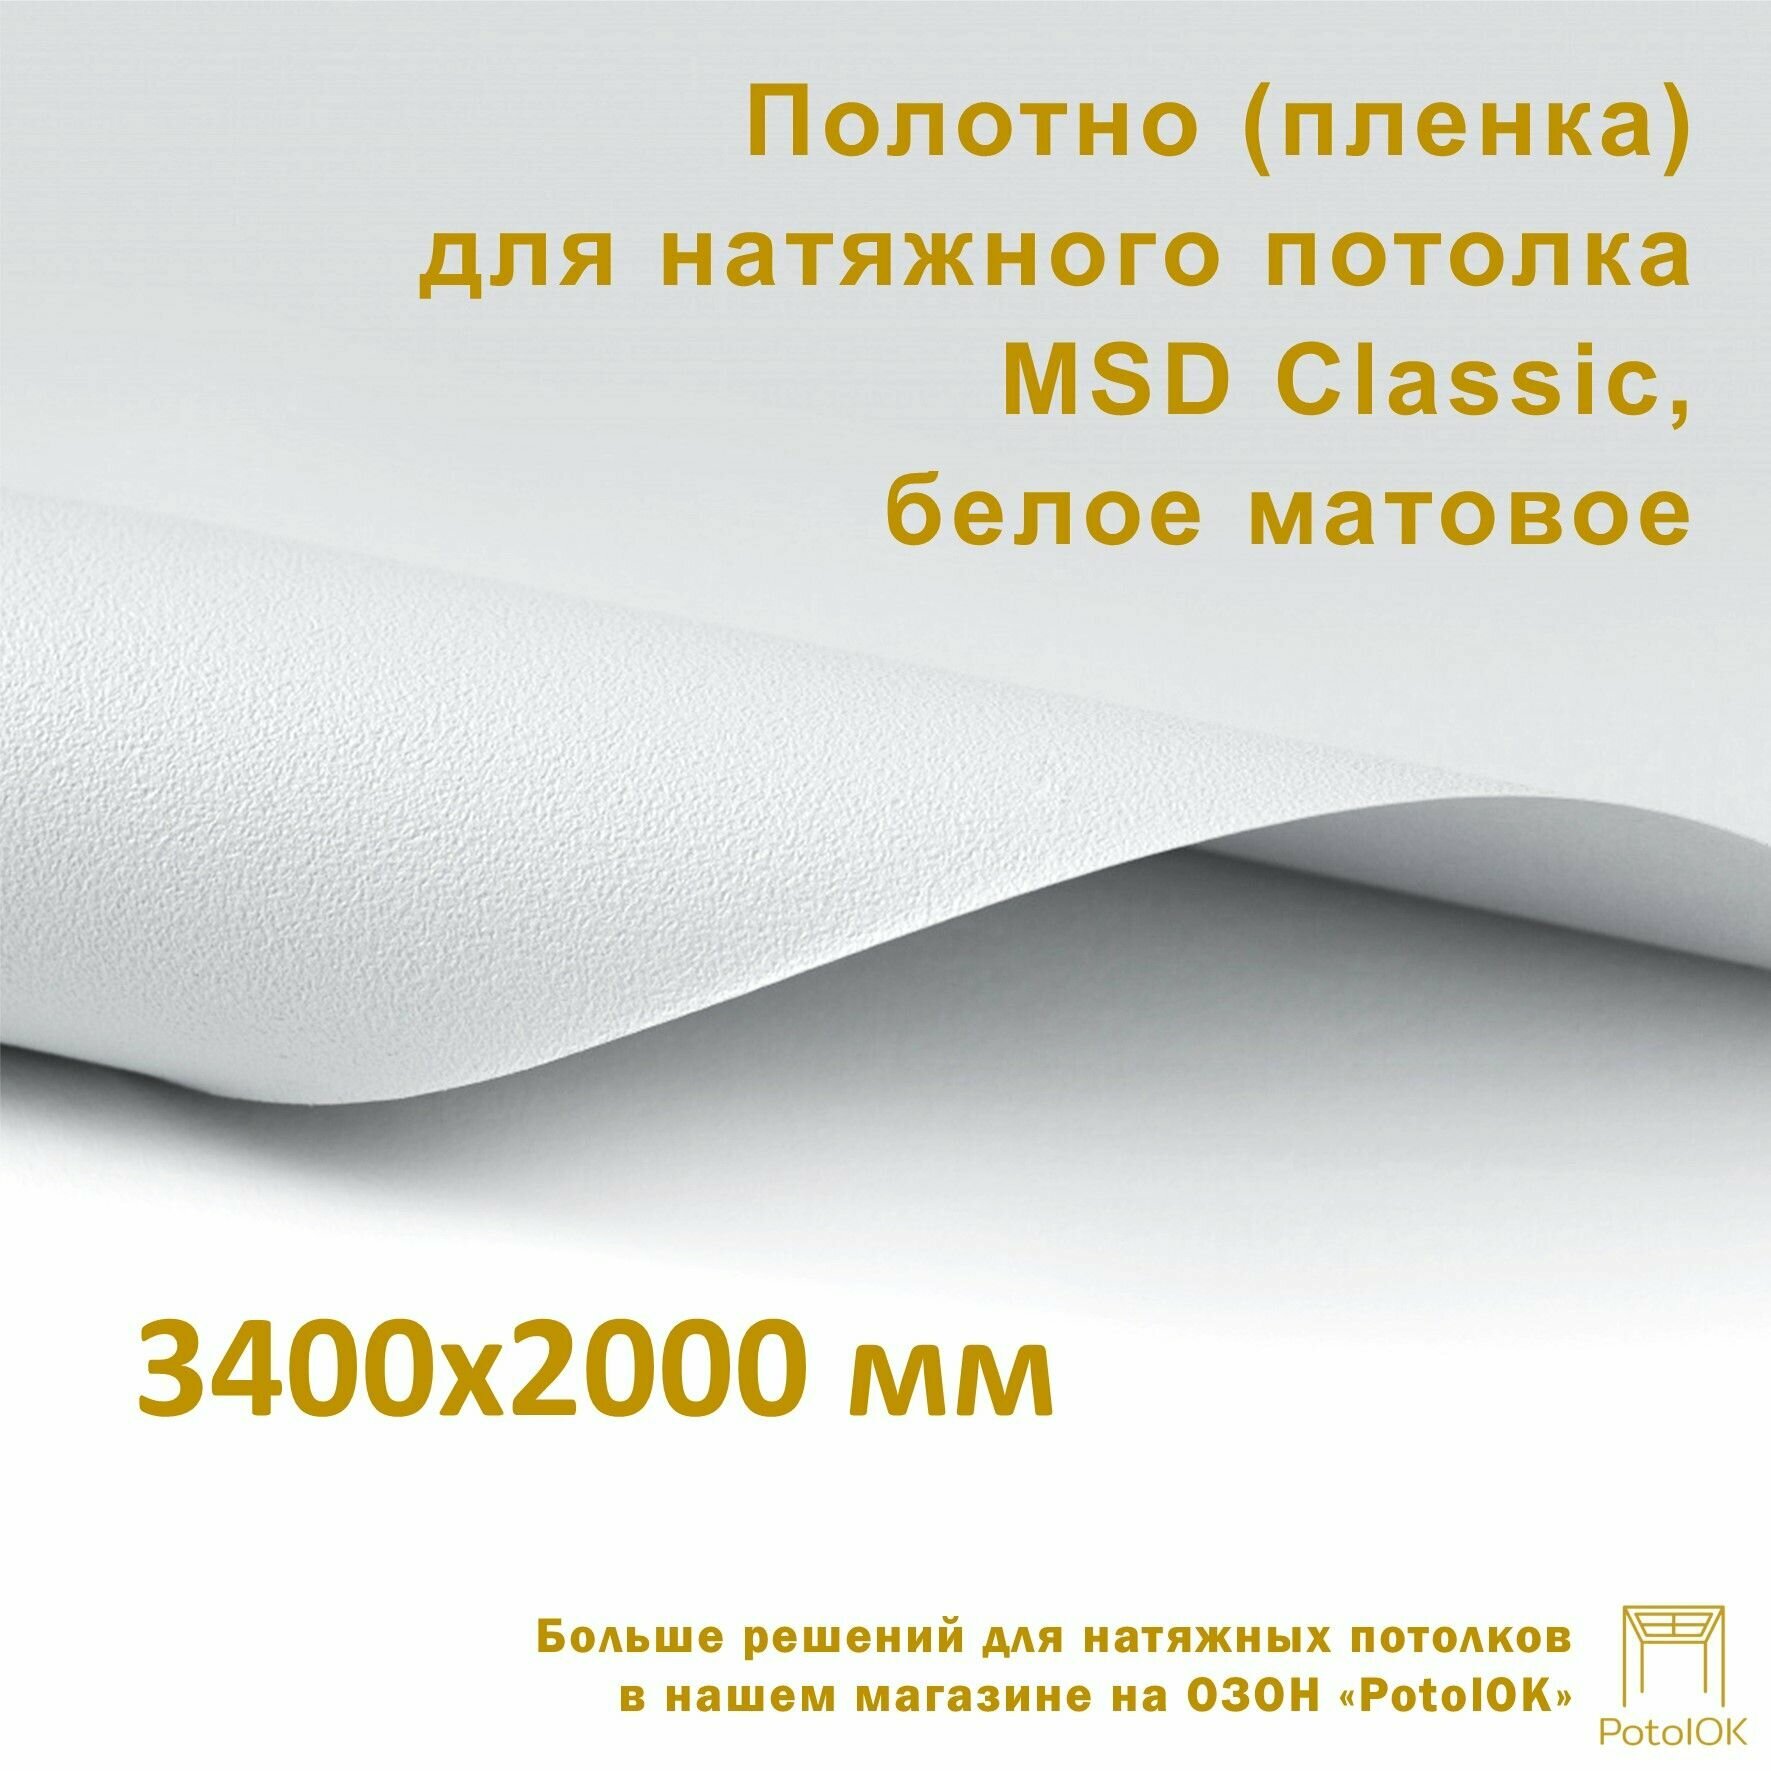 Полотно (пленка) для натяжного потолка MSD CLASSIC, белое матовое, 3400x2000 мм